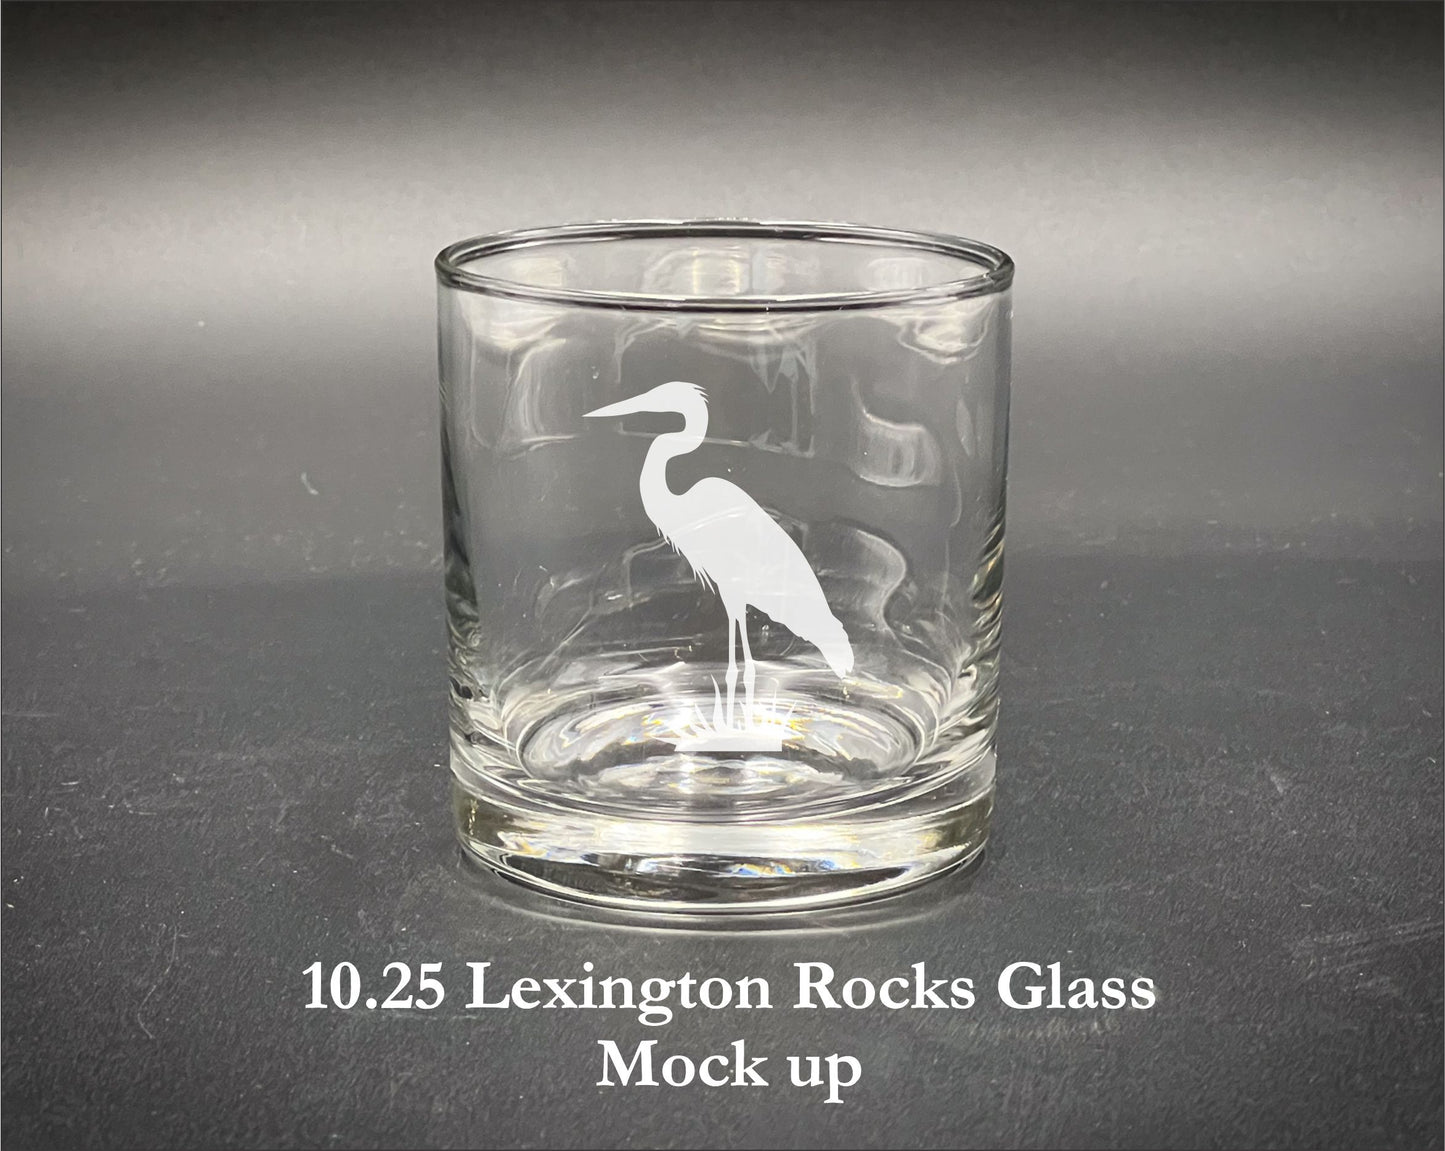 Blue Heron - Laser Engraved Glassware